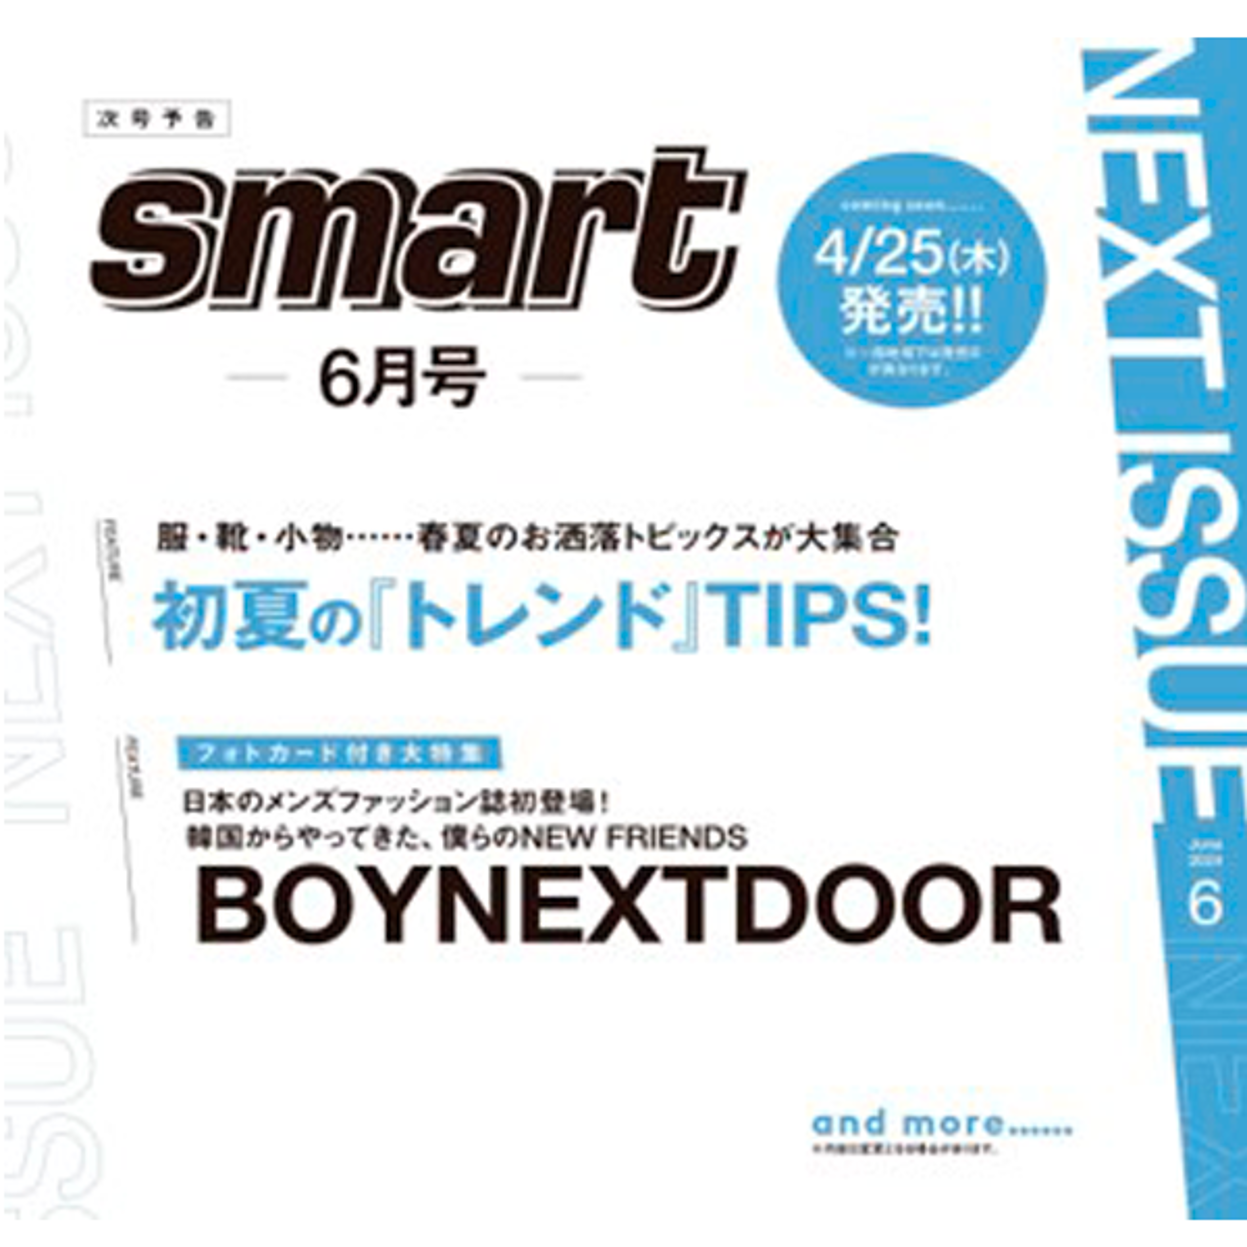 smart 06月号 (封面:boy next door) (日本杂志)